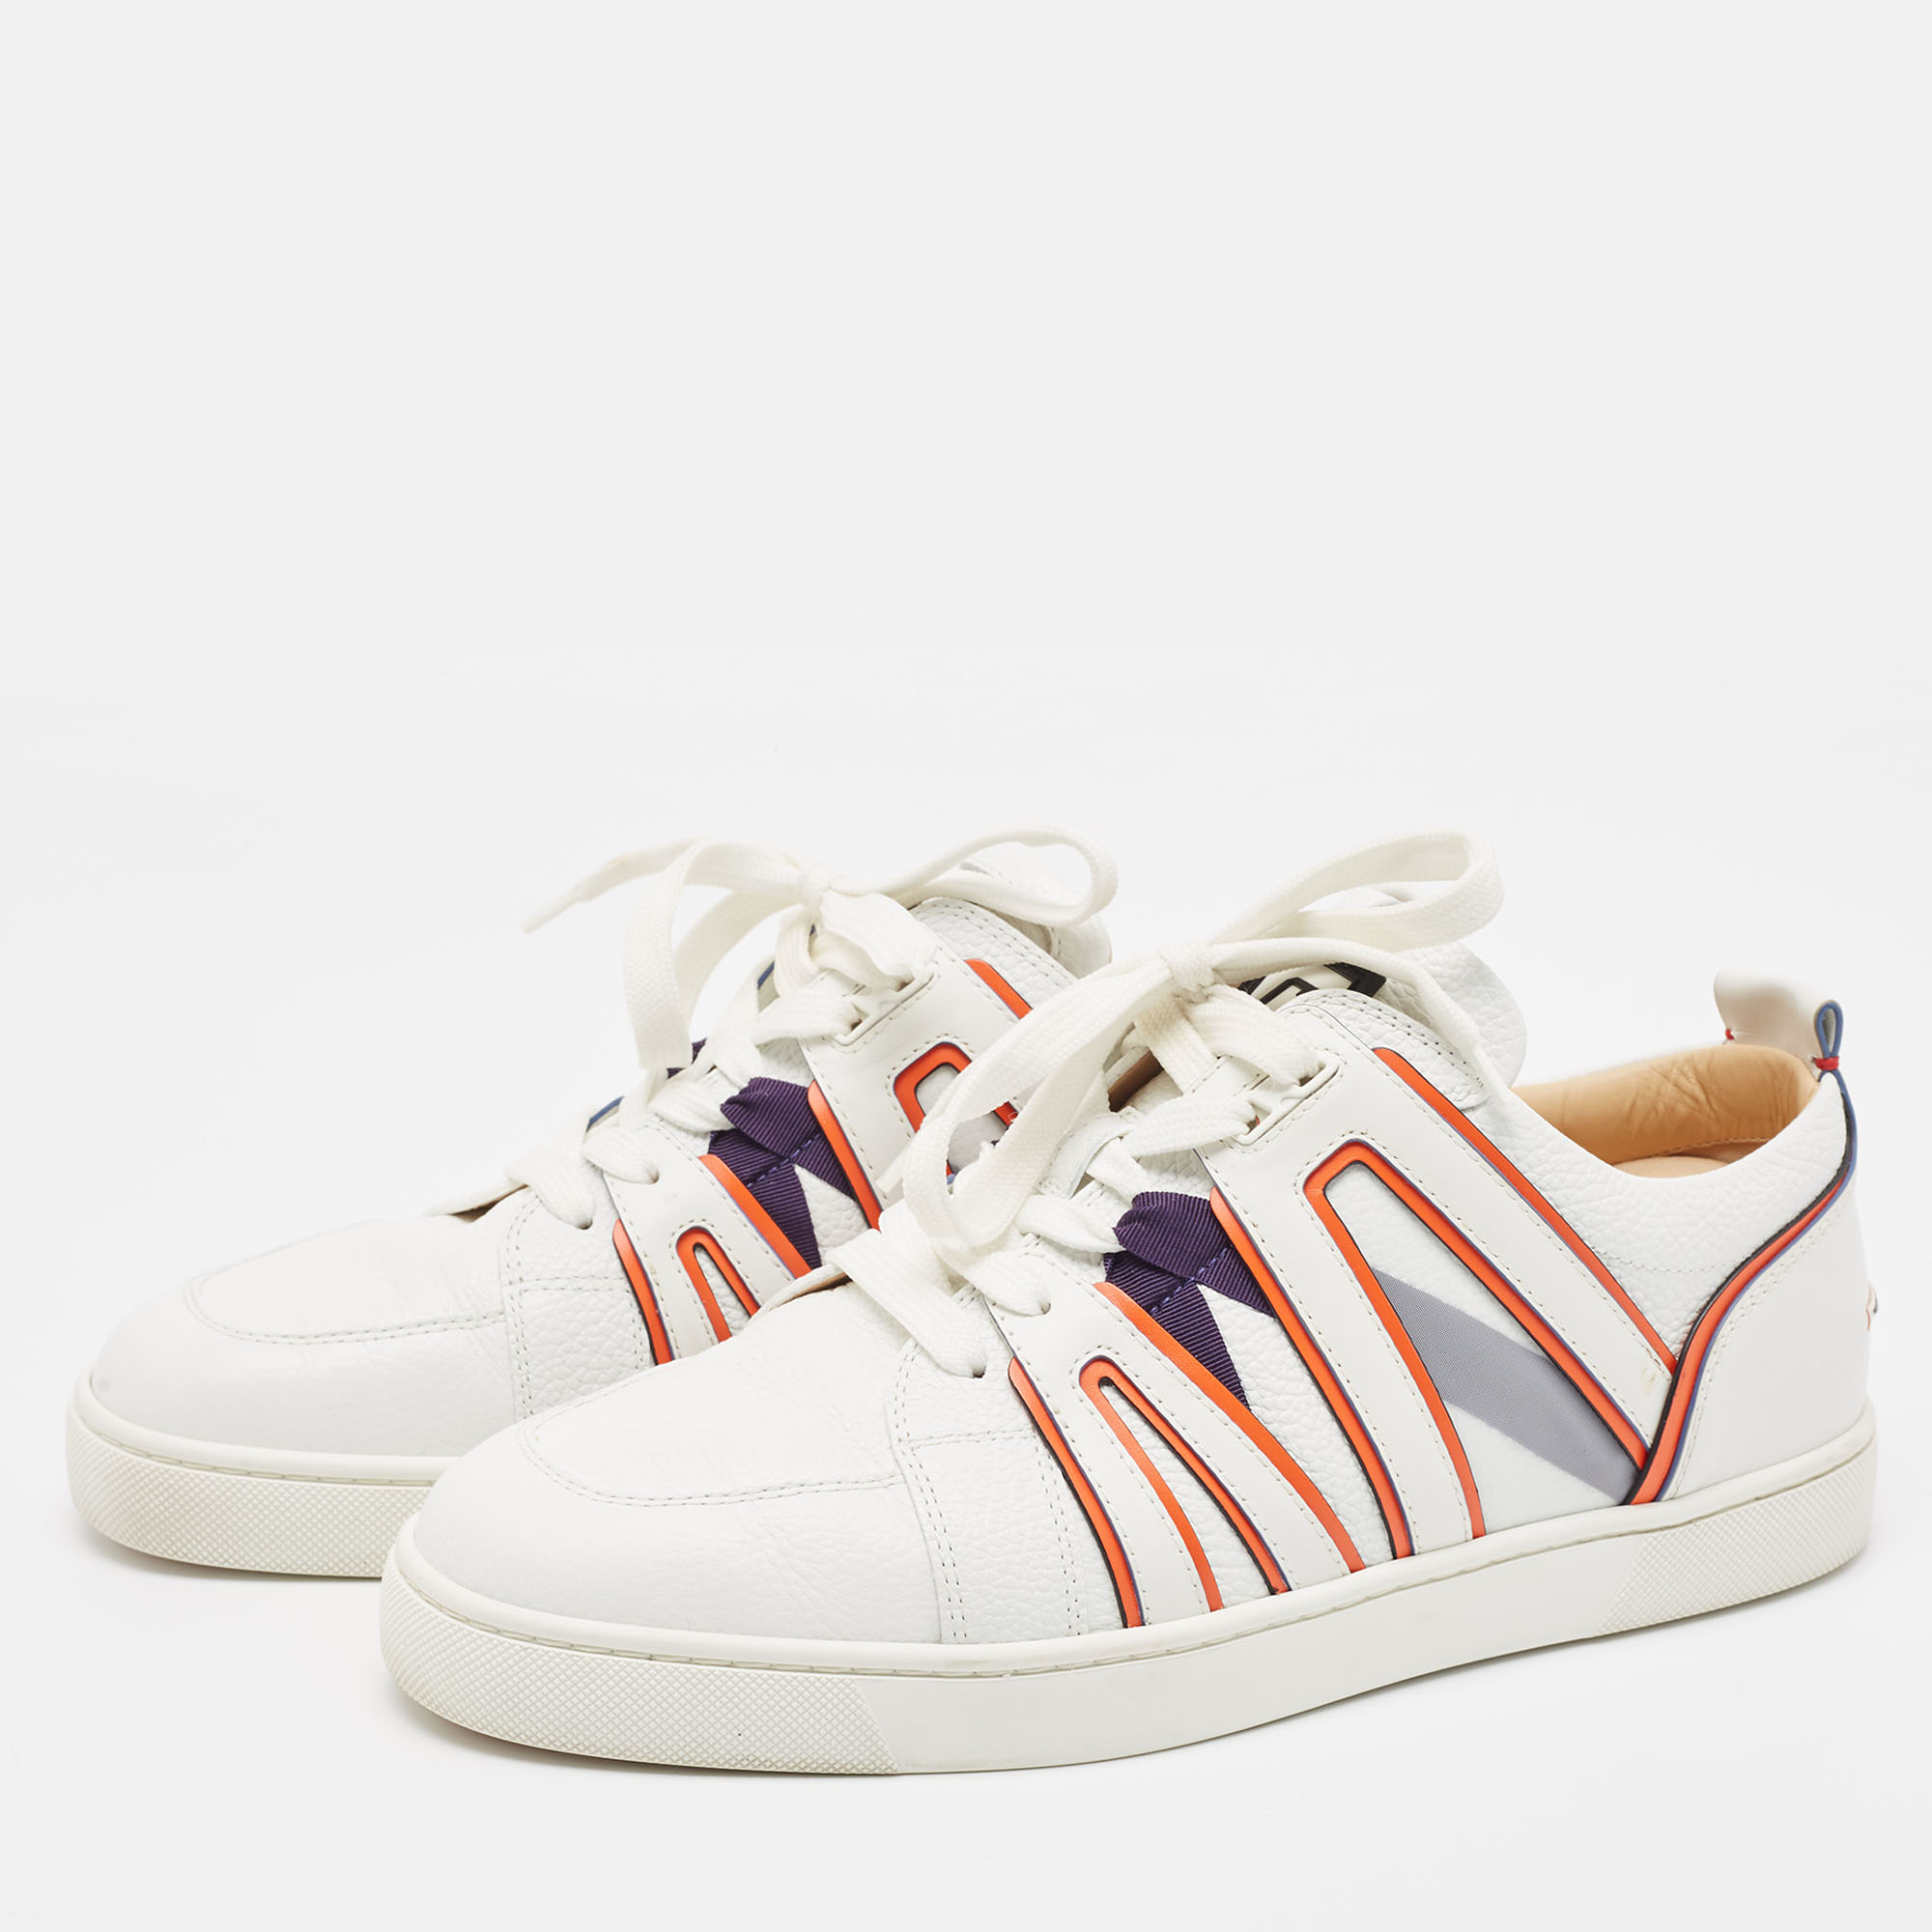 

Christian Louboutin White/Orange Leather Vida Viva Sneakers Size